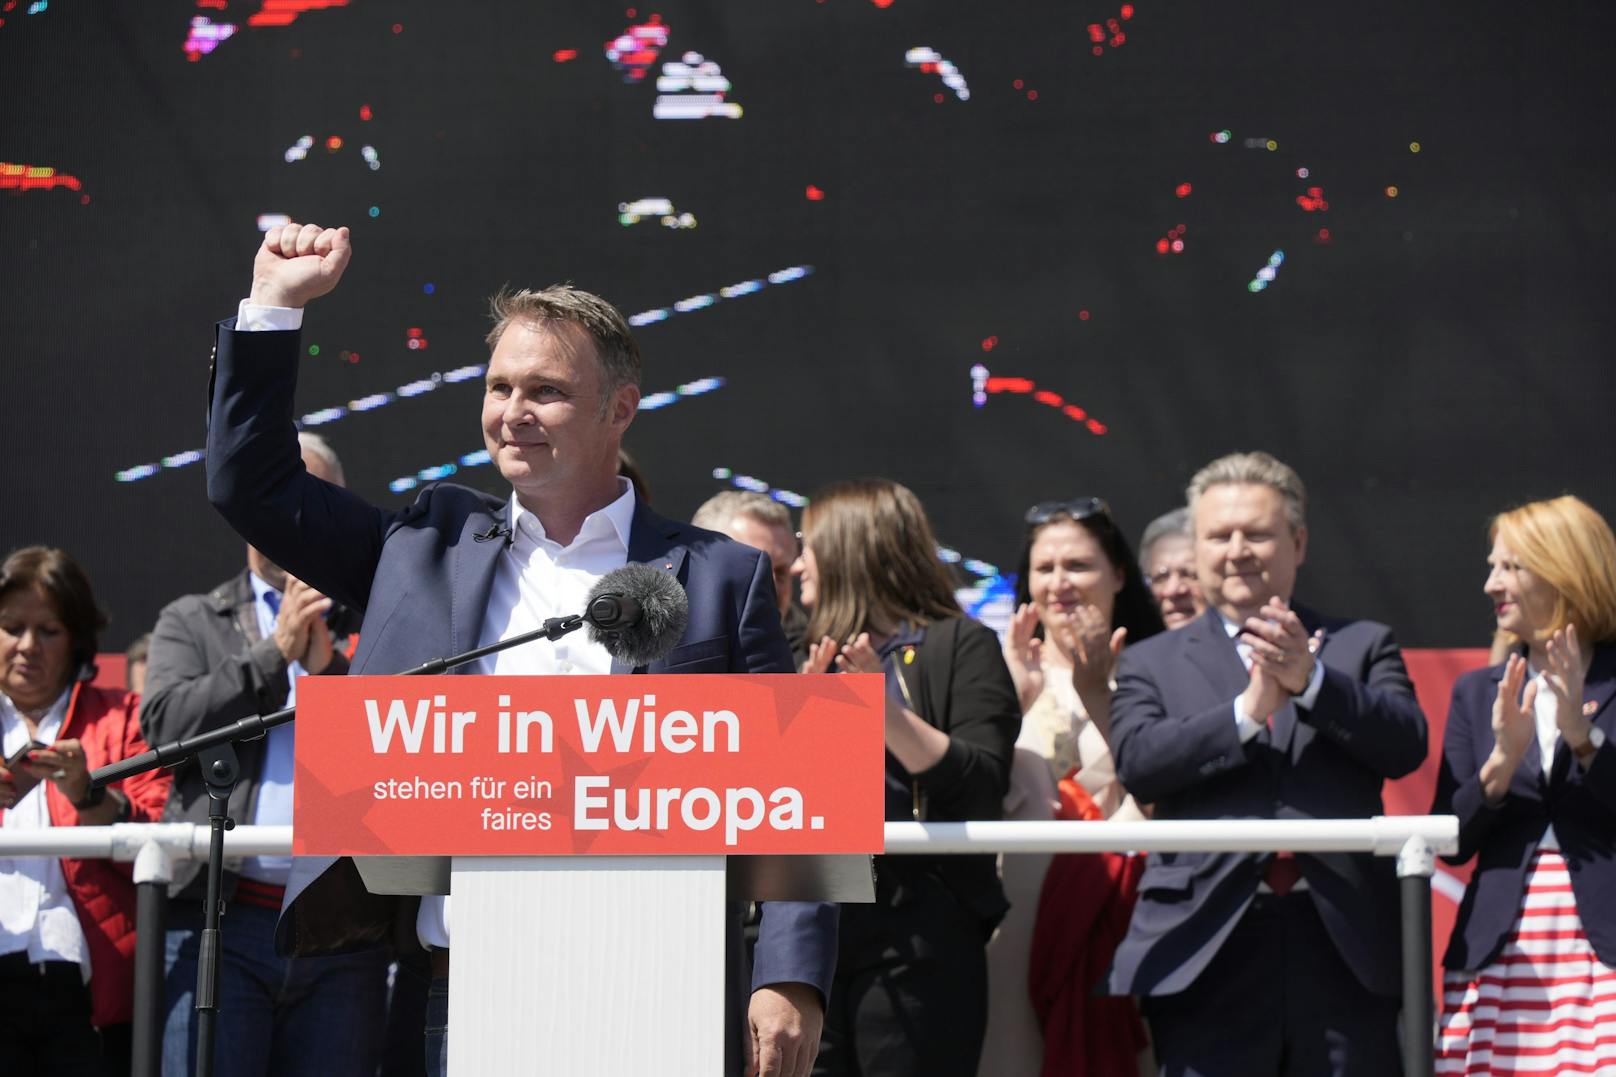 <strong>03.05.2024: Mehrheit will SPÖ wieder in Regierung, FPÖ-Fans dagegen</strong>.&nbsp;Seit 2017 schmoren die Roten auf der Oppositionsbank. <a data-li-document-ref="120034606" href="https://www.heute.at/s/mehrheit-will-spoe-wieder-in-regierung-fpoe-fans-dagegen-120034606">Laut brandaktueller "Heute"-Umfrage wollen das 53 Prozent der Befragten nach der Wahl ändern.</a>